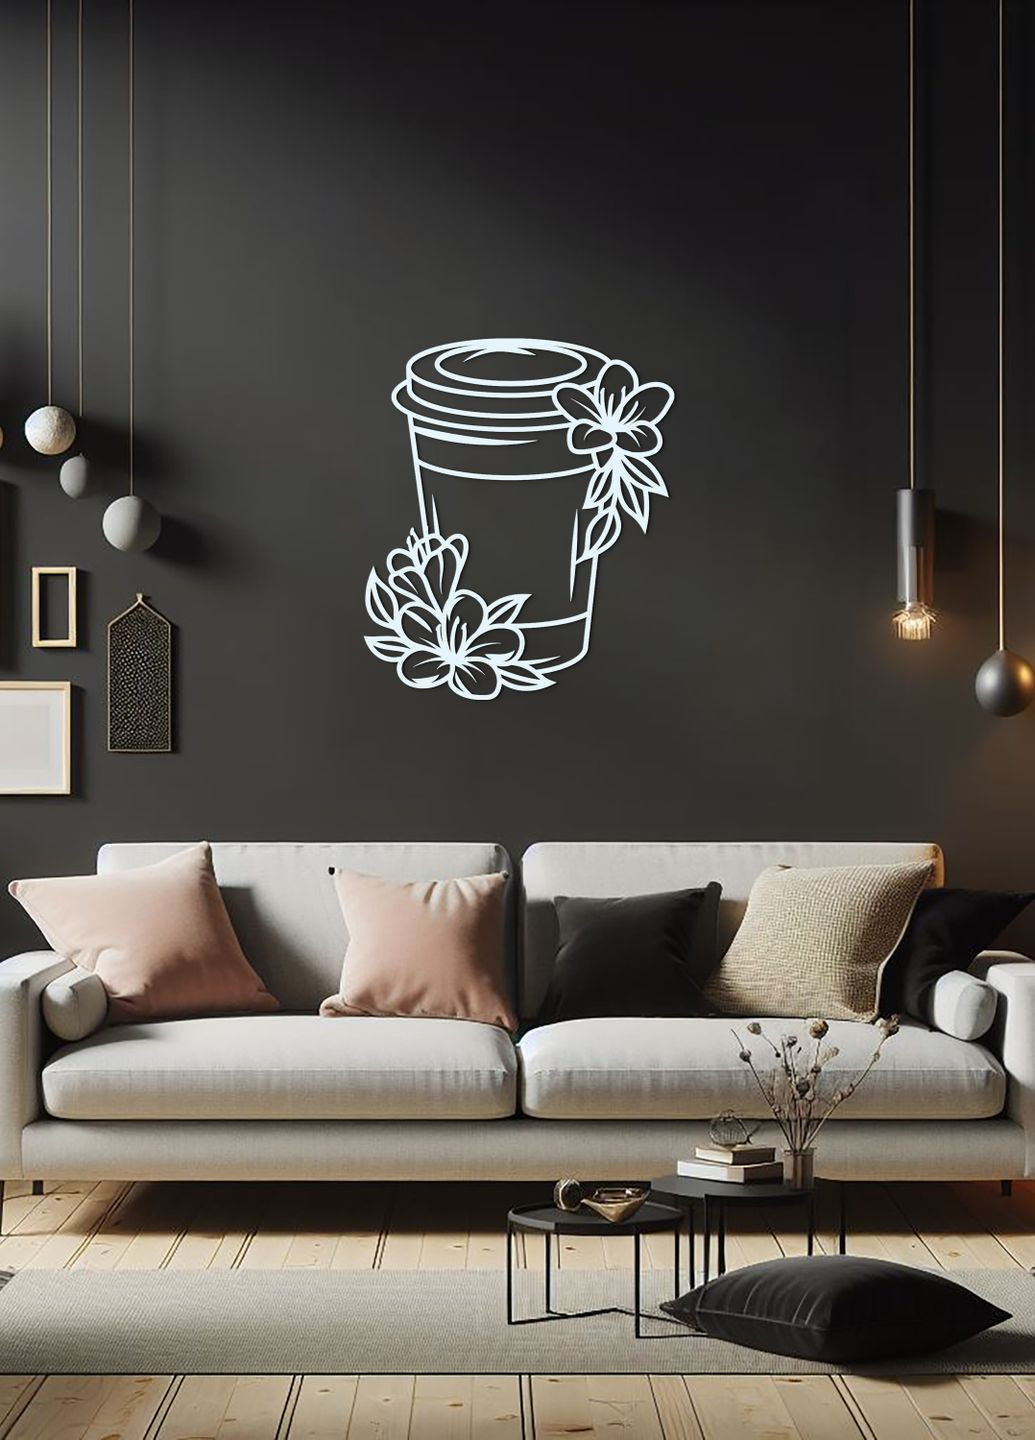 Настенный Декор в комнату, интерьерная картина из дерева "Кофе с собой", стиль минимализм 20х23 см Woodyard (291882445)